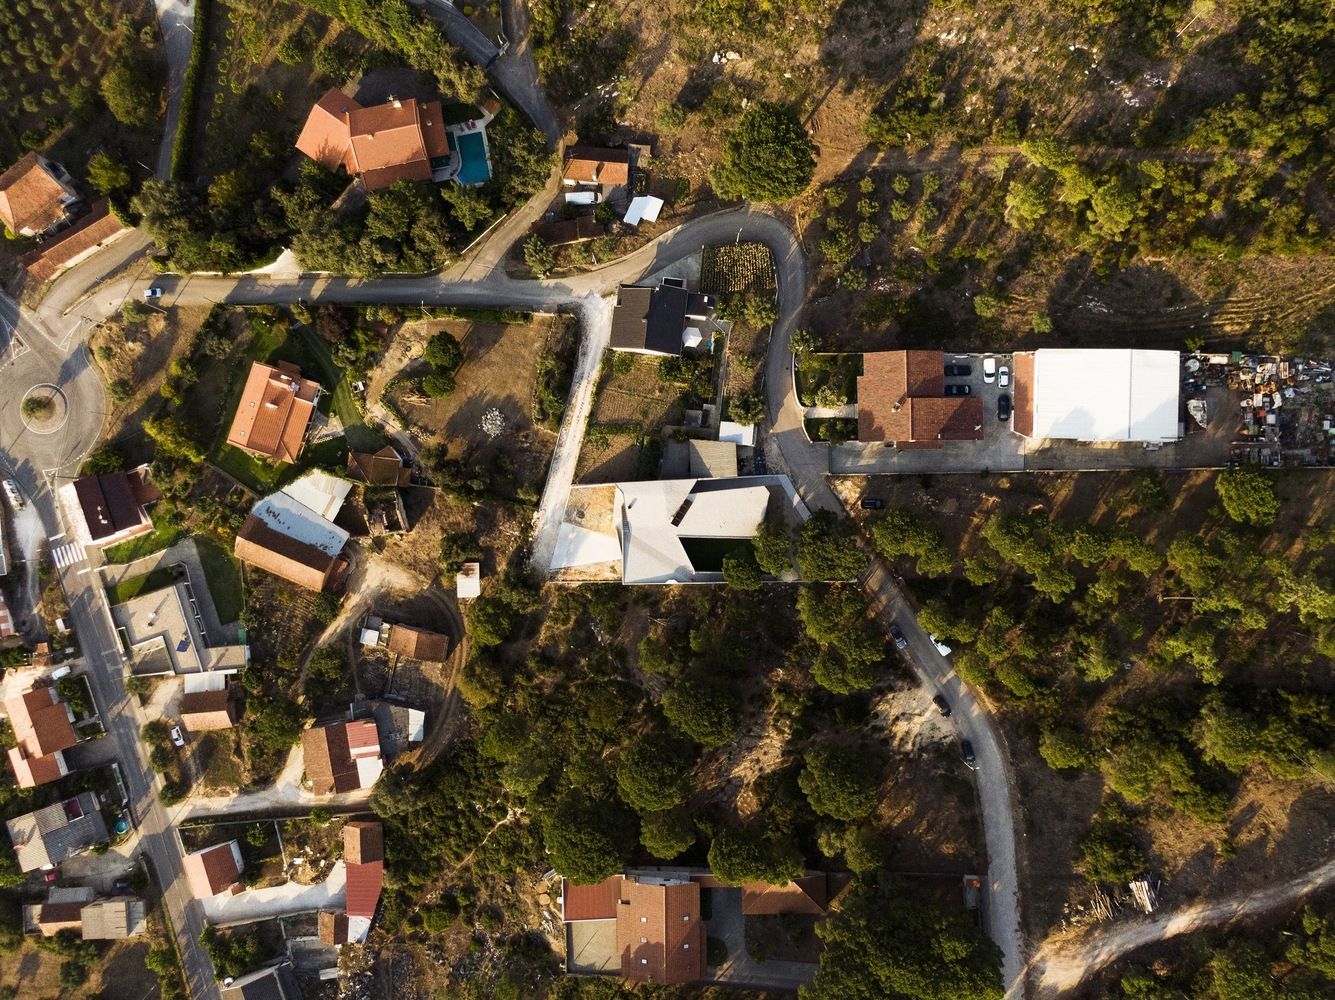 Сплошной бетон: в Португалии возвели жилье в форме лабиринта – фото